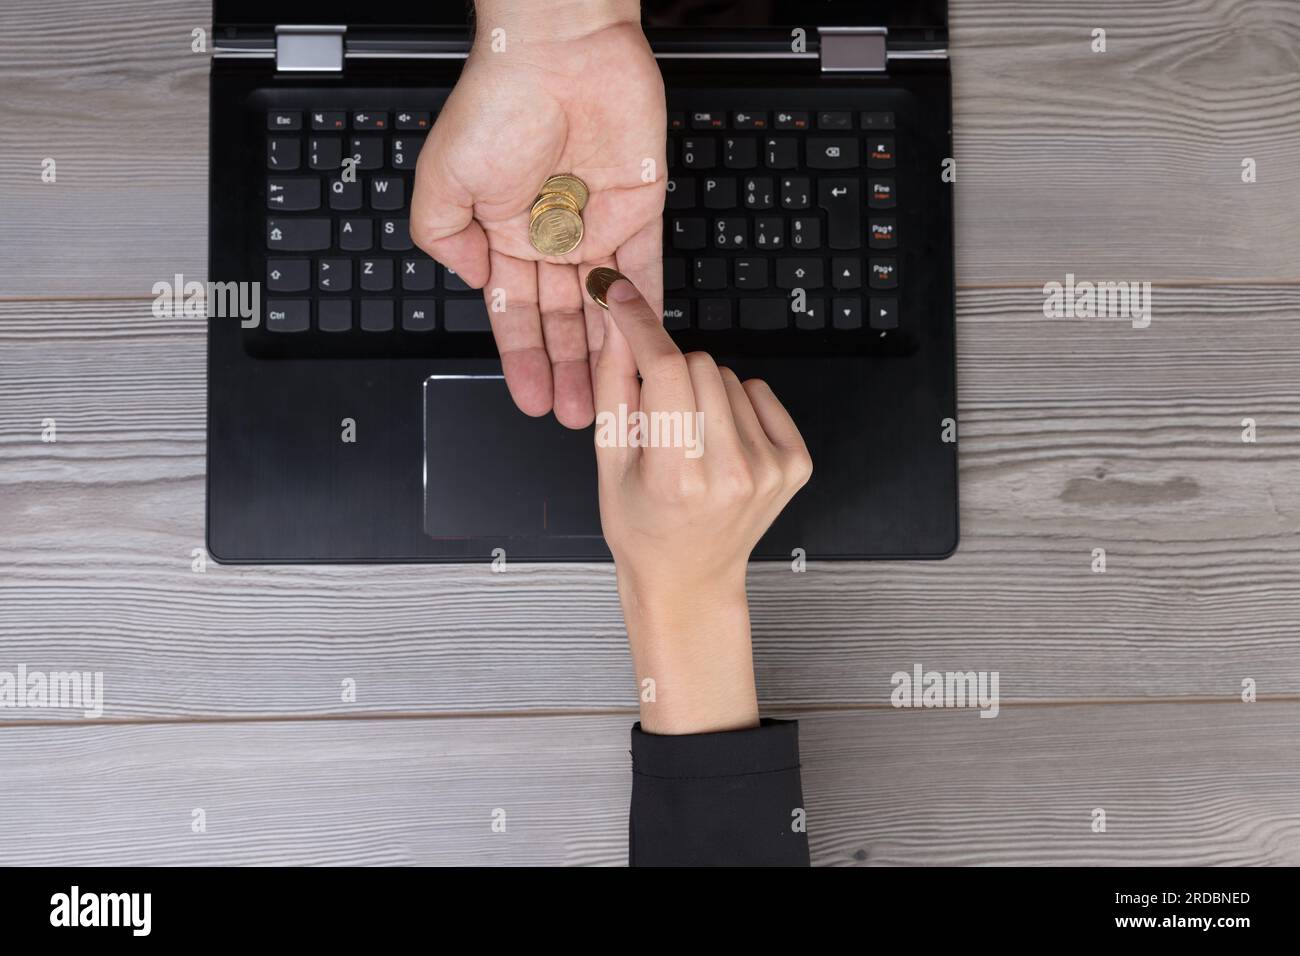 Von oben gesehen, wie eine Hand zahlt und eine andere über einen Computerbildschirm Geld empfängt. Symbolisiert Online-Transaktionen, E-Commerce und das seismische Shif Stockfoto